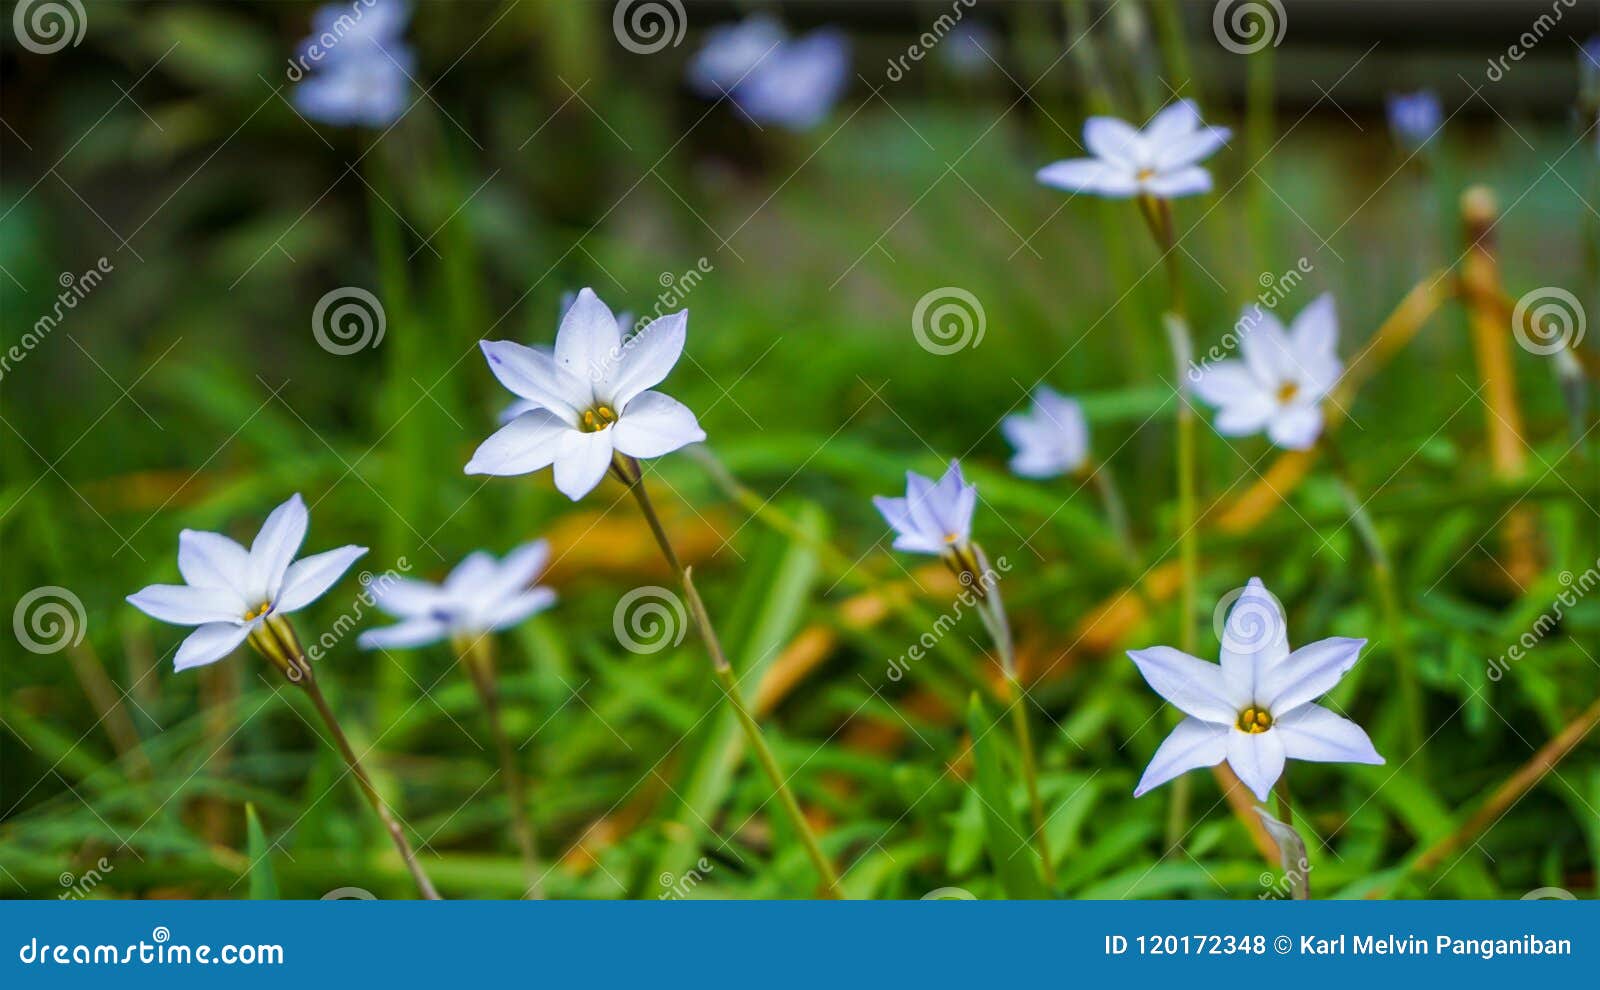 Tiny white flowers stock photo. Image of beautiful, fresh ...